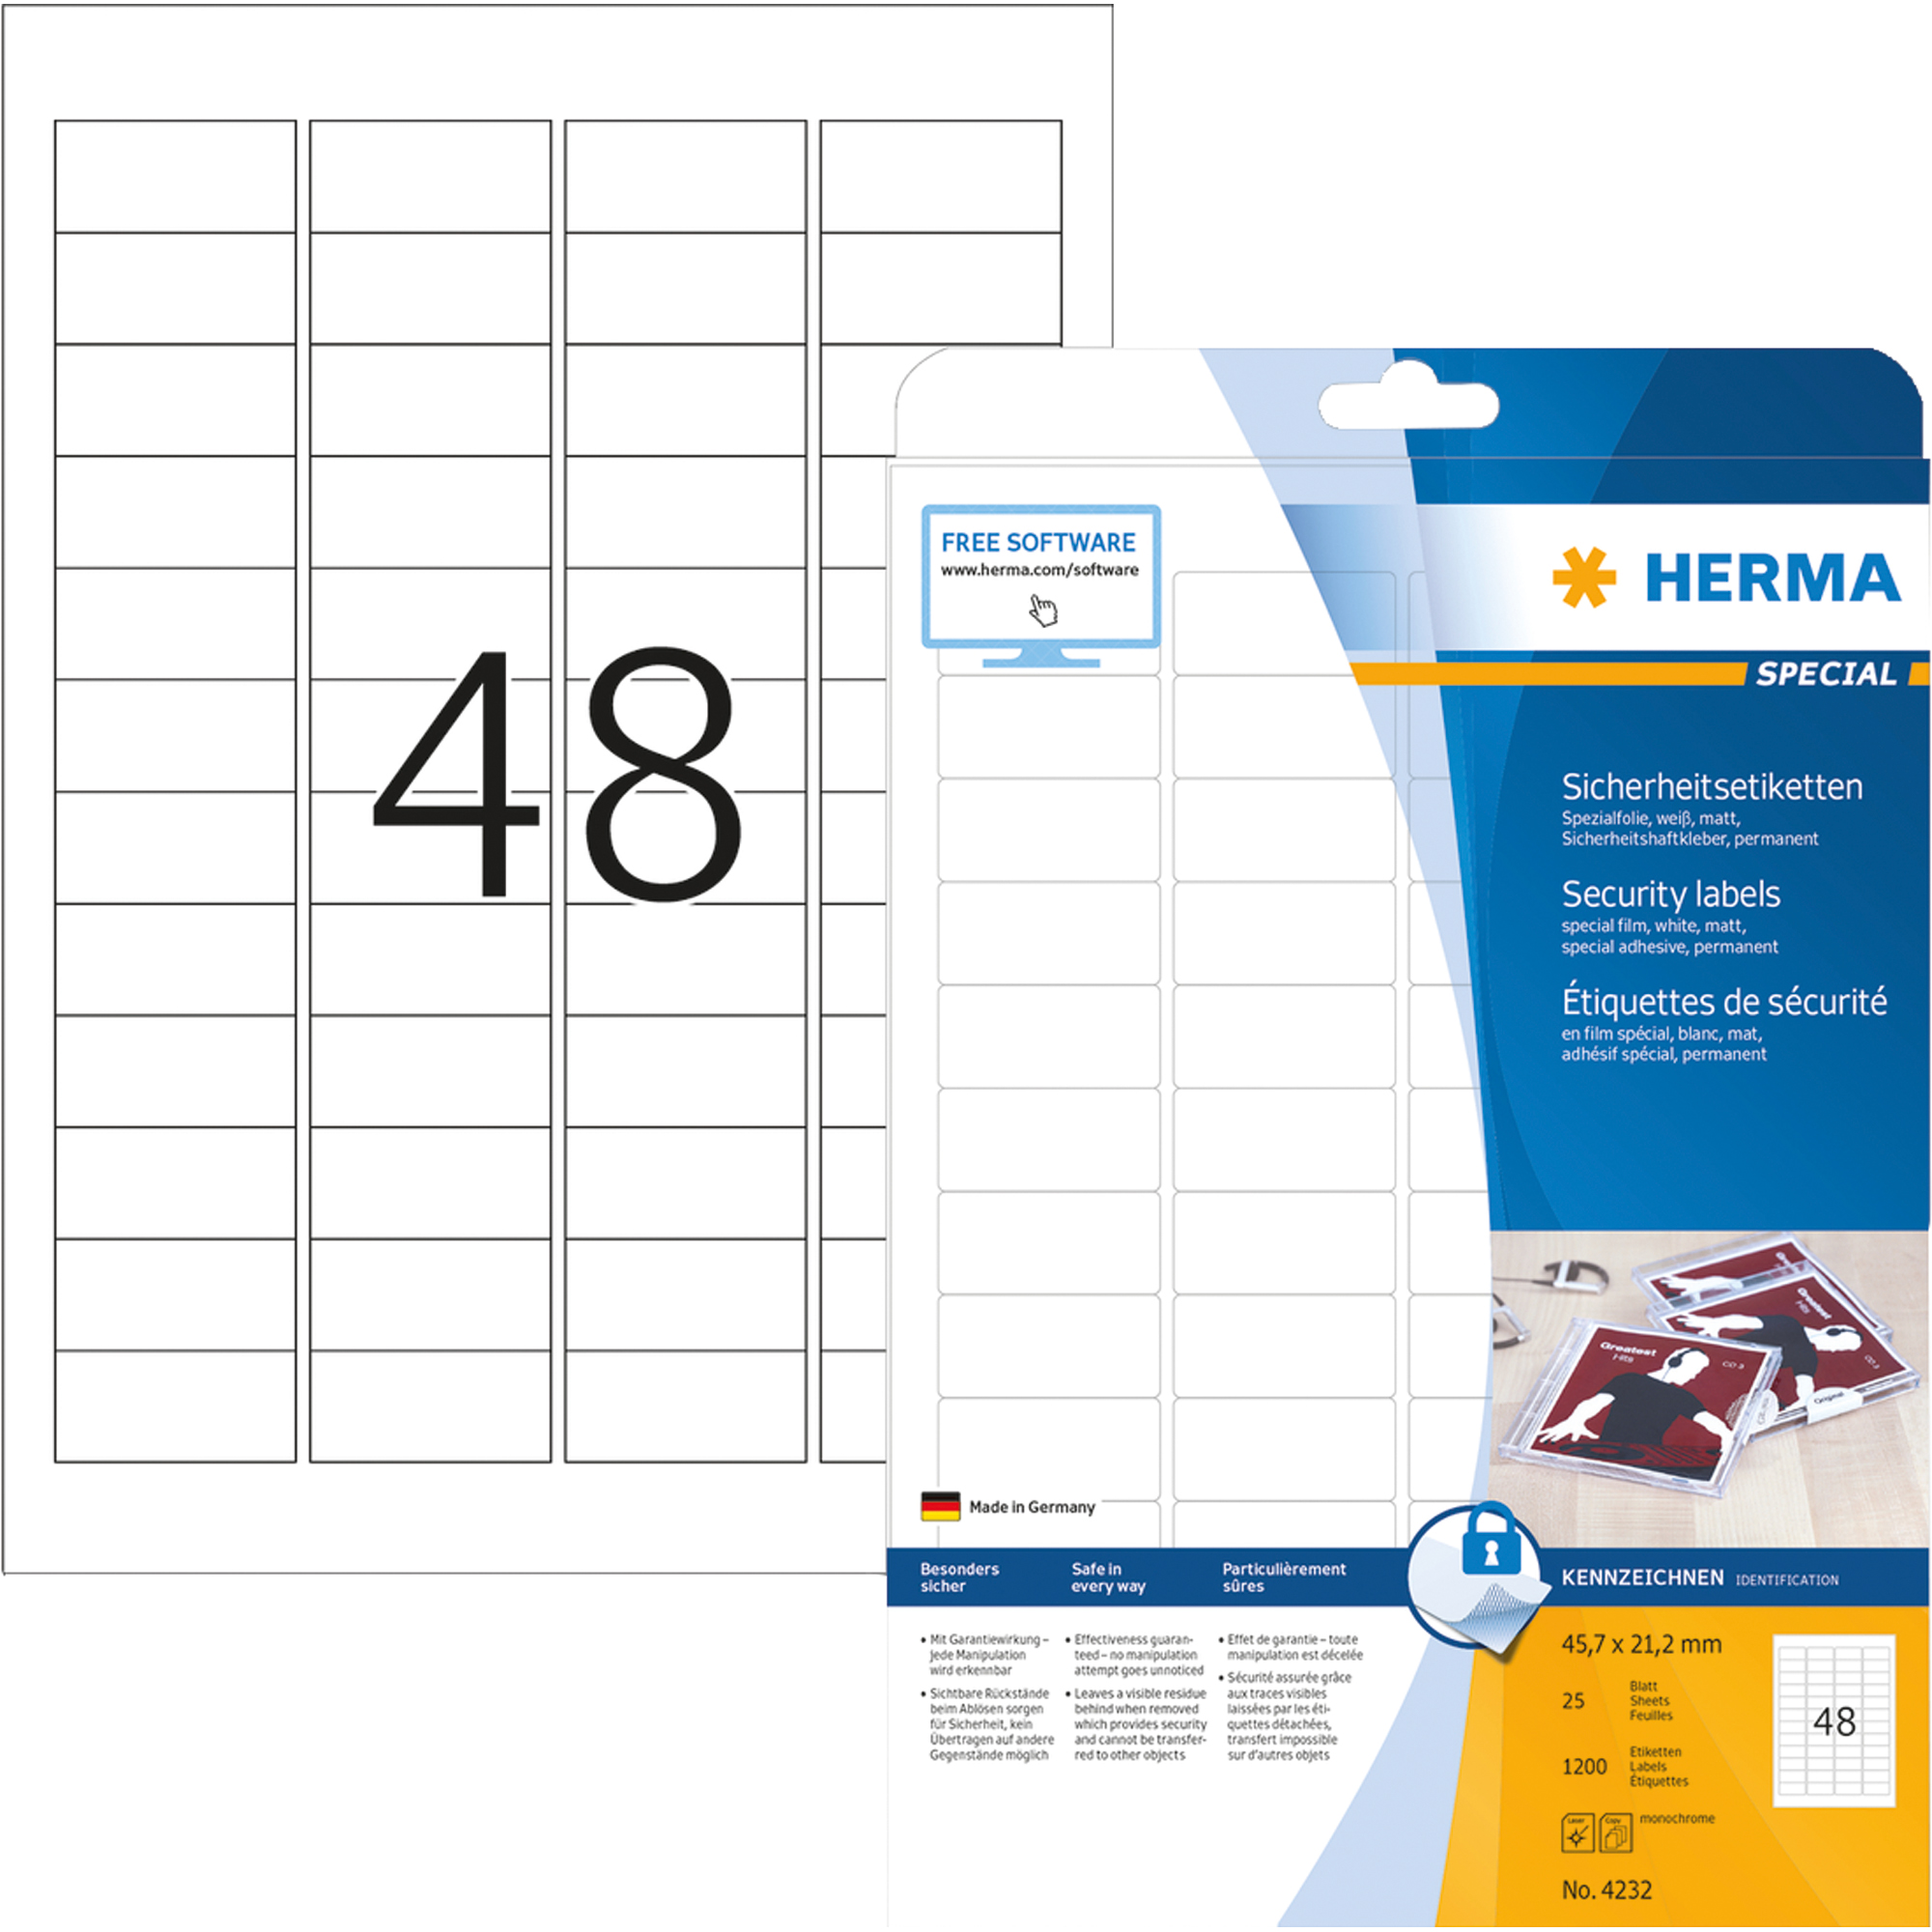 HERMA Sicherheitsetikett SPECIAL 45,7 x 21,2 mm